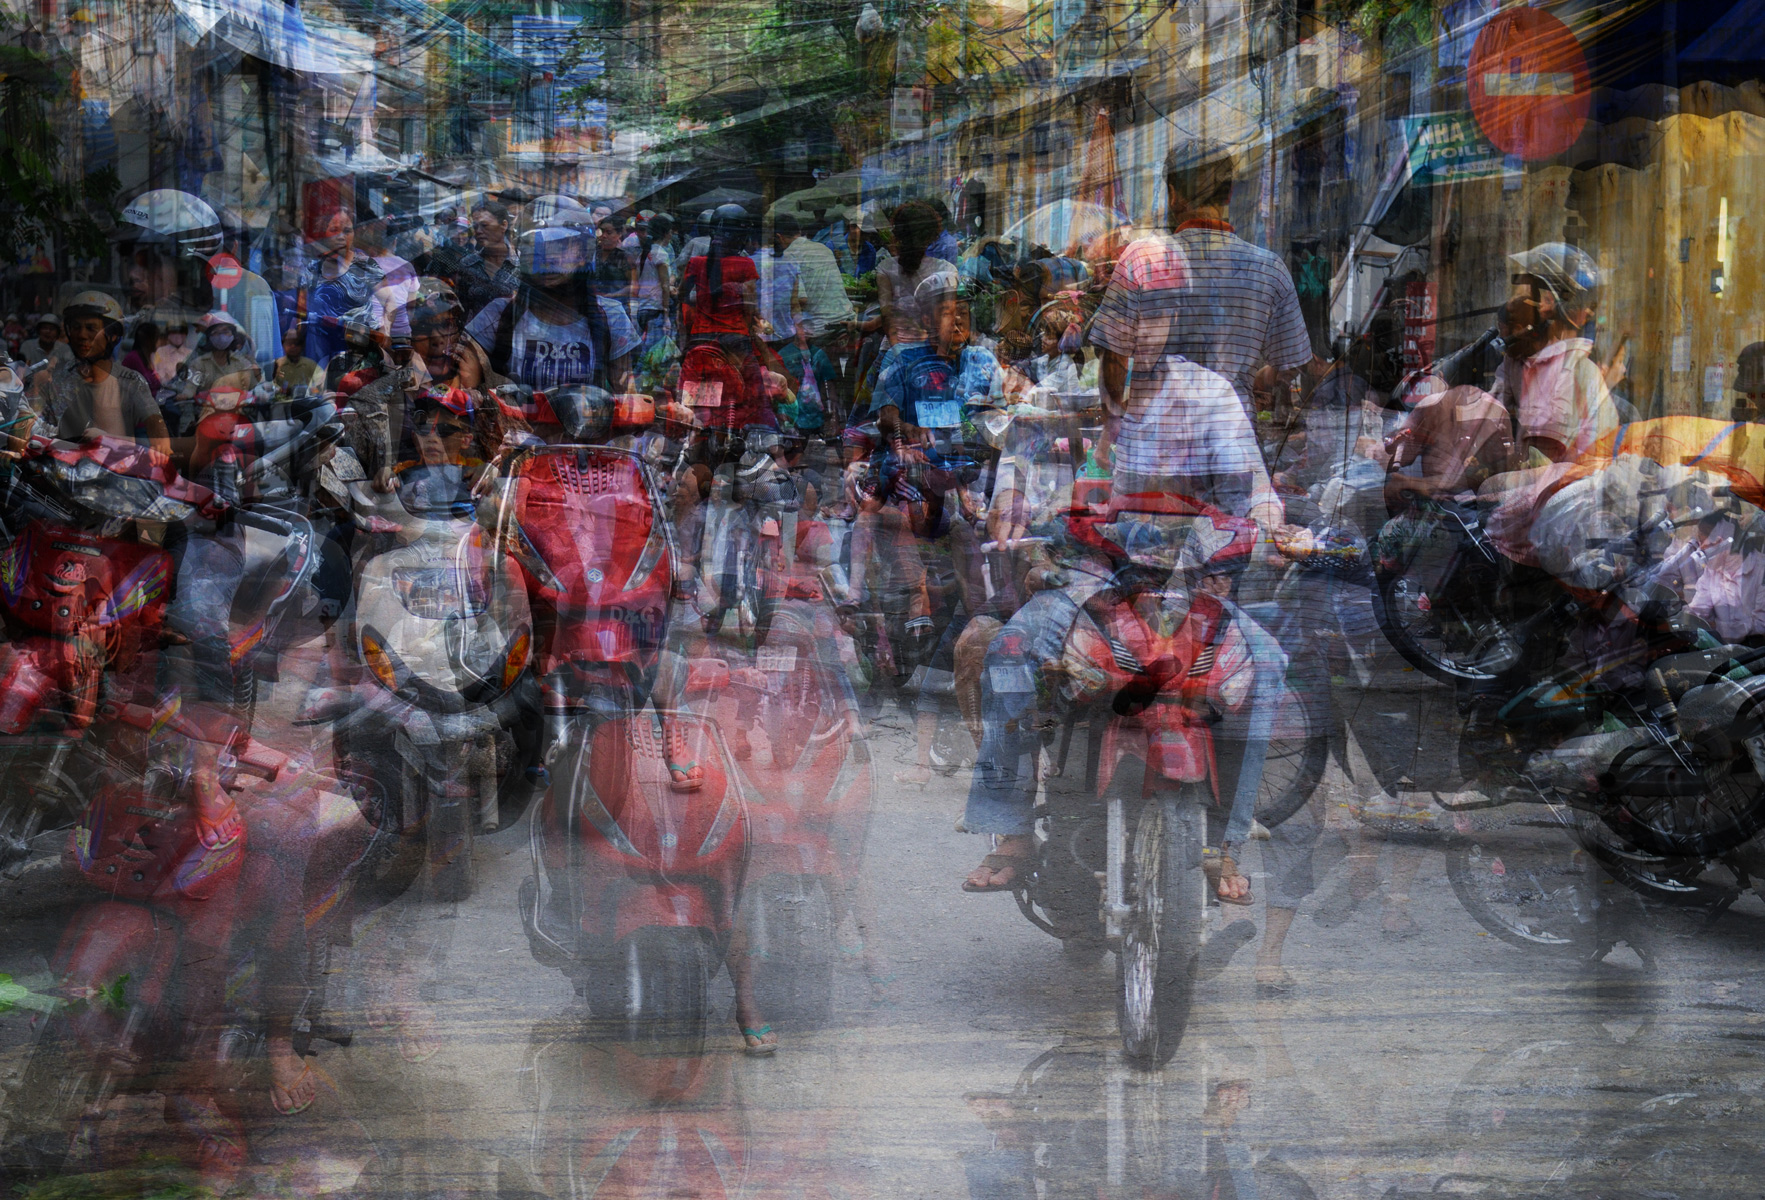 Intensités urbaines, Hanoi